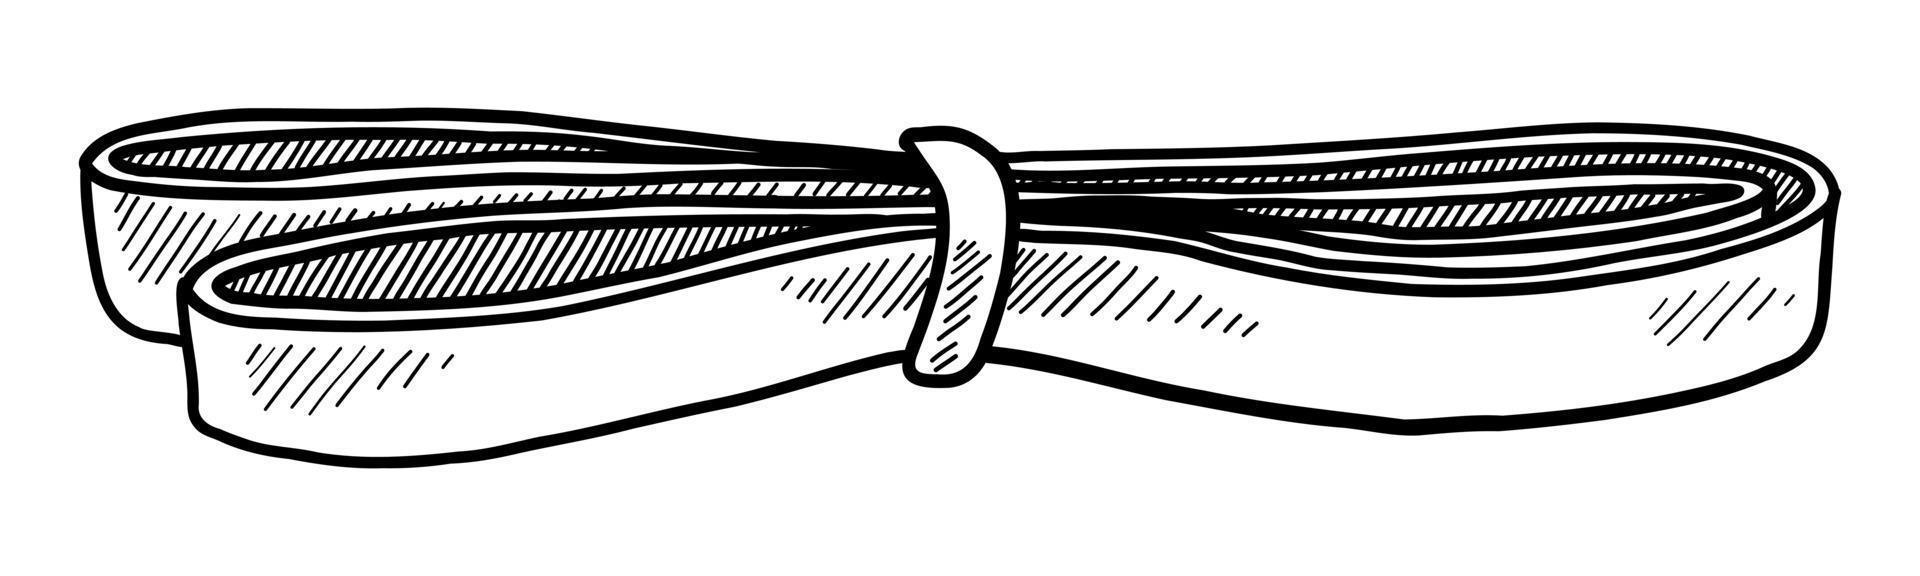 vectorillustratie van een expander tape geïsoleerd op een witte achtergrond. doodle tekenen met de hand vector